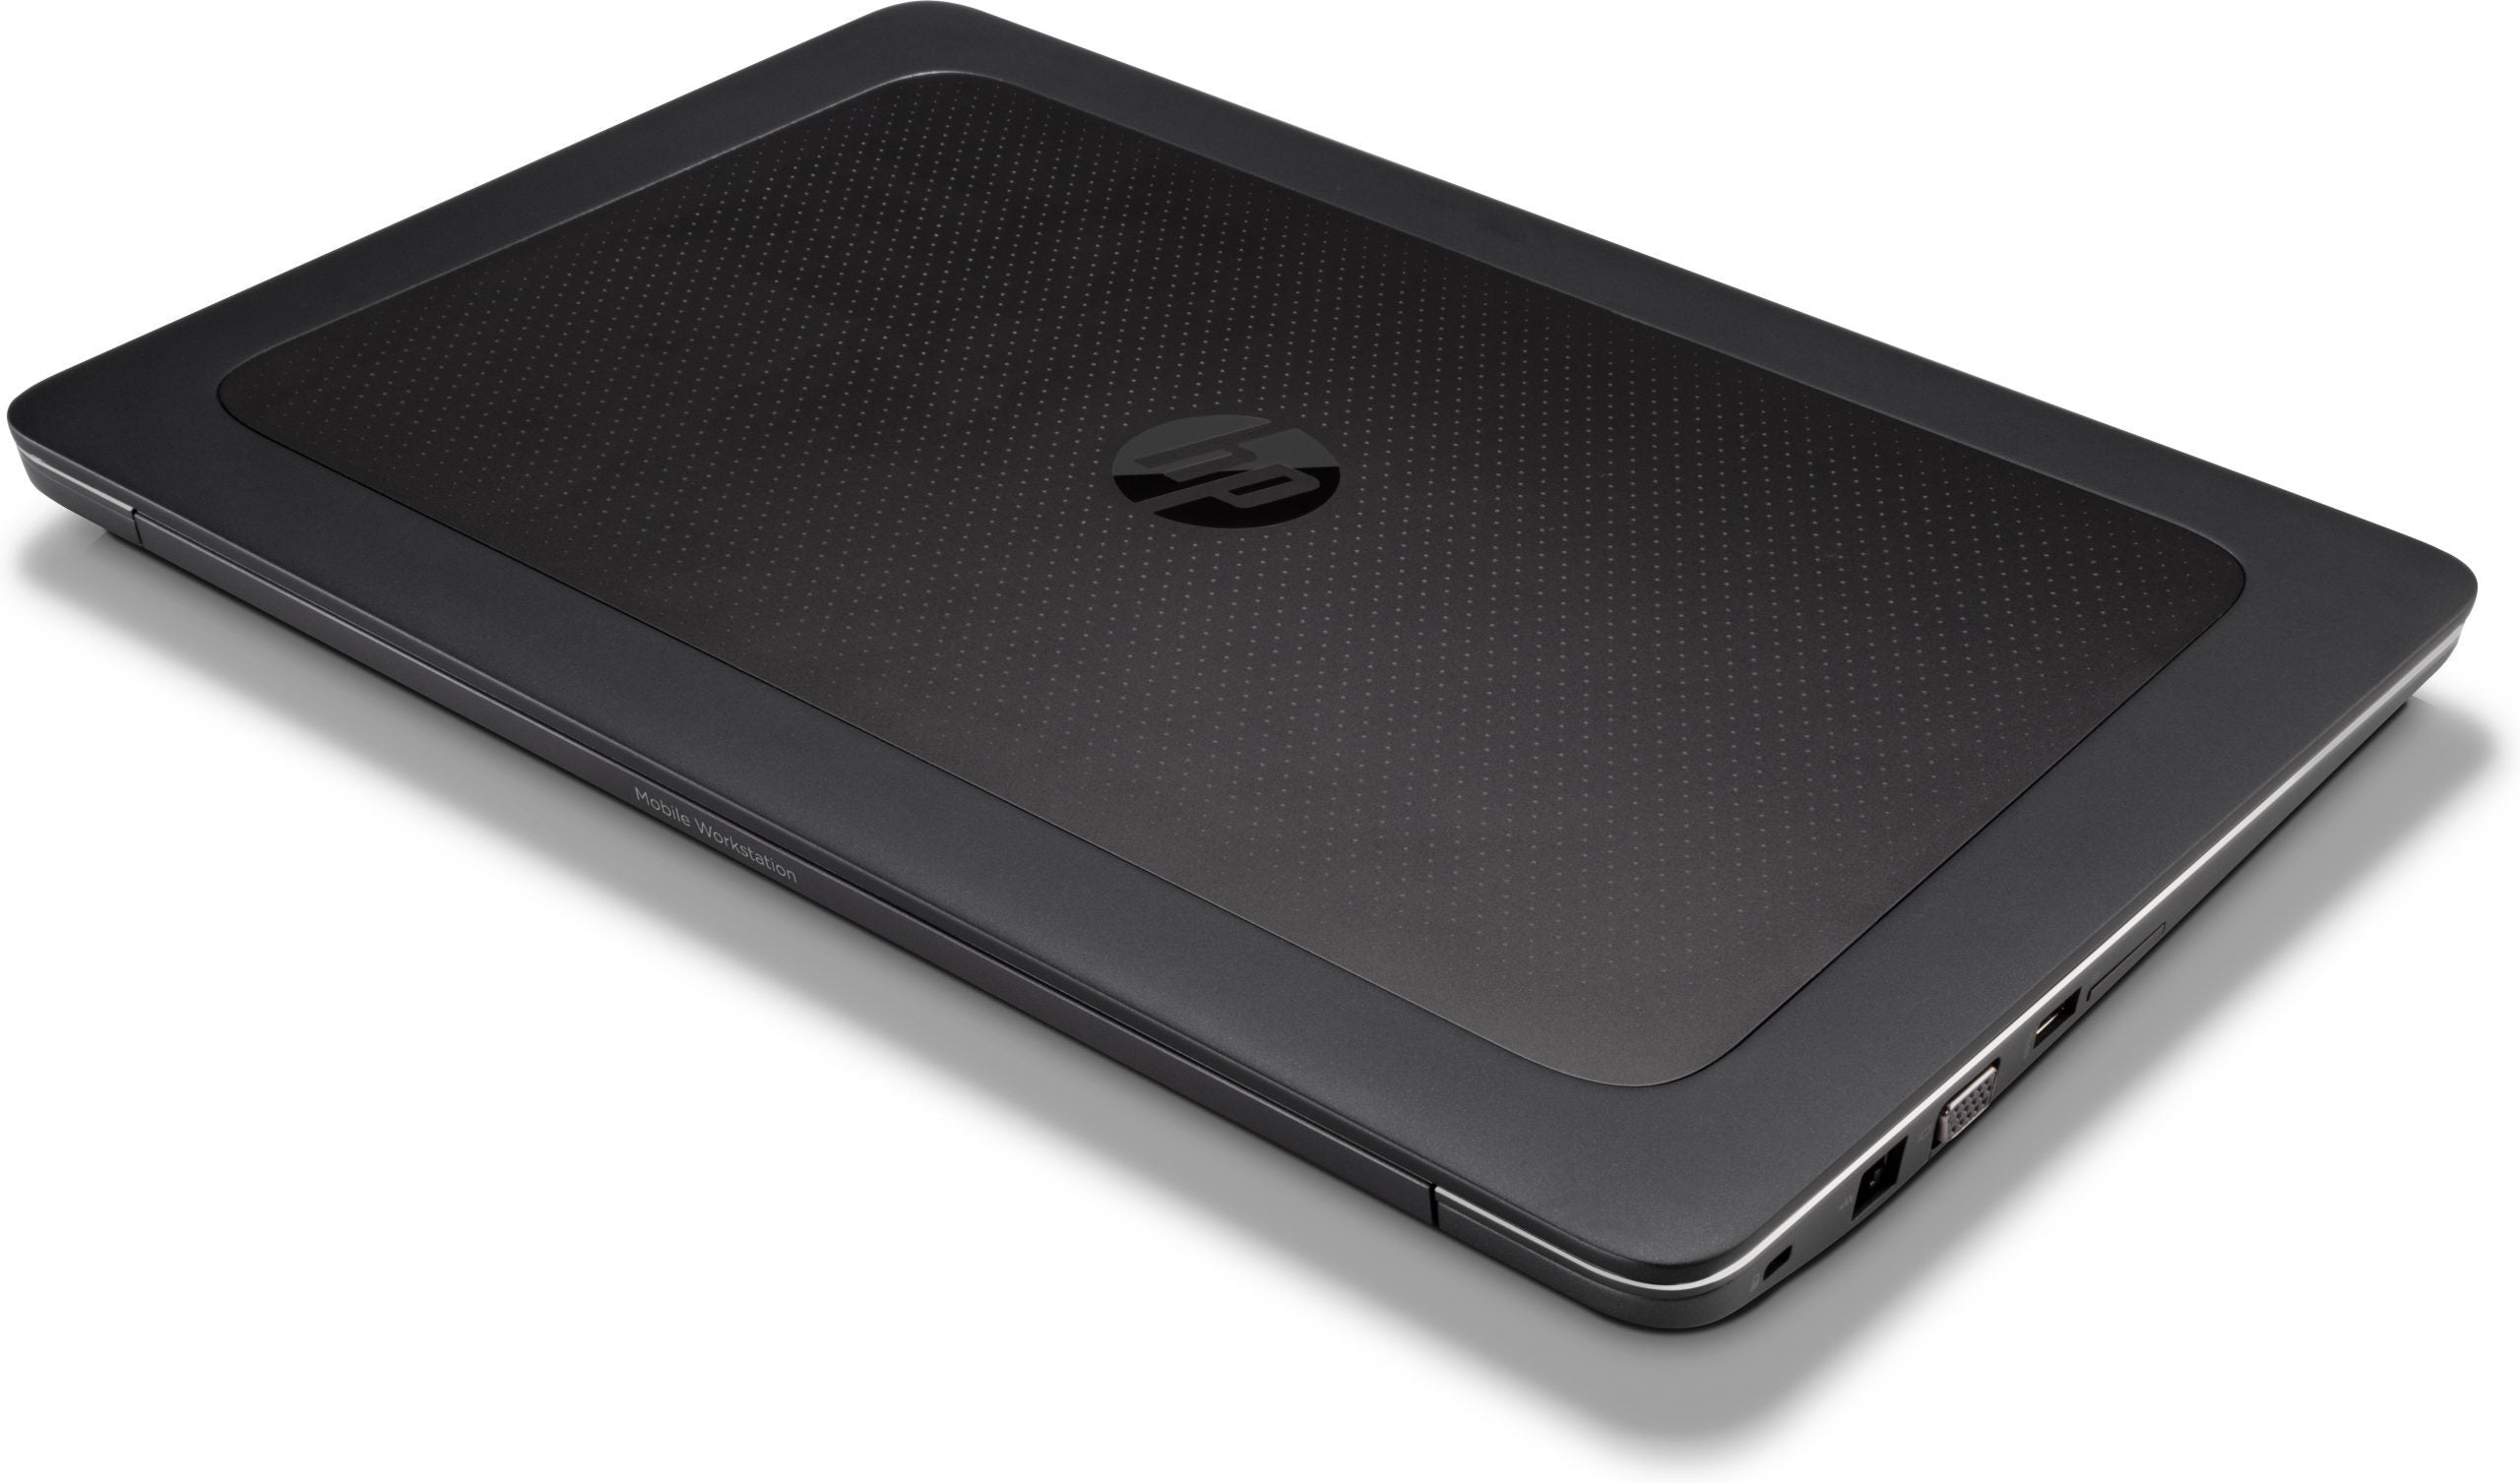 HP ZBook 15 G3 Notebook WorkStation | 15.6